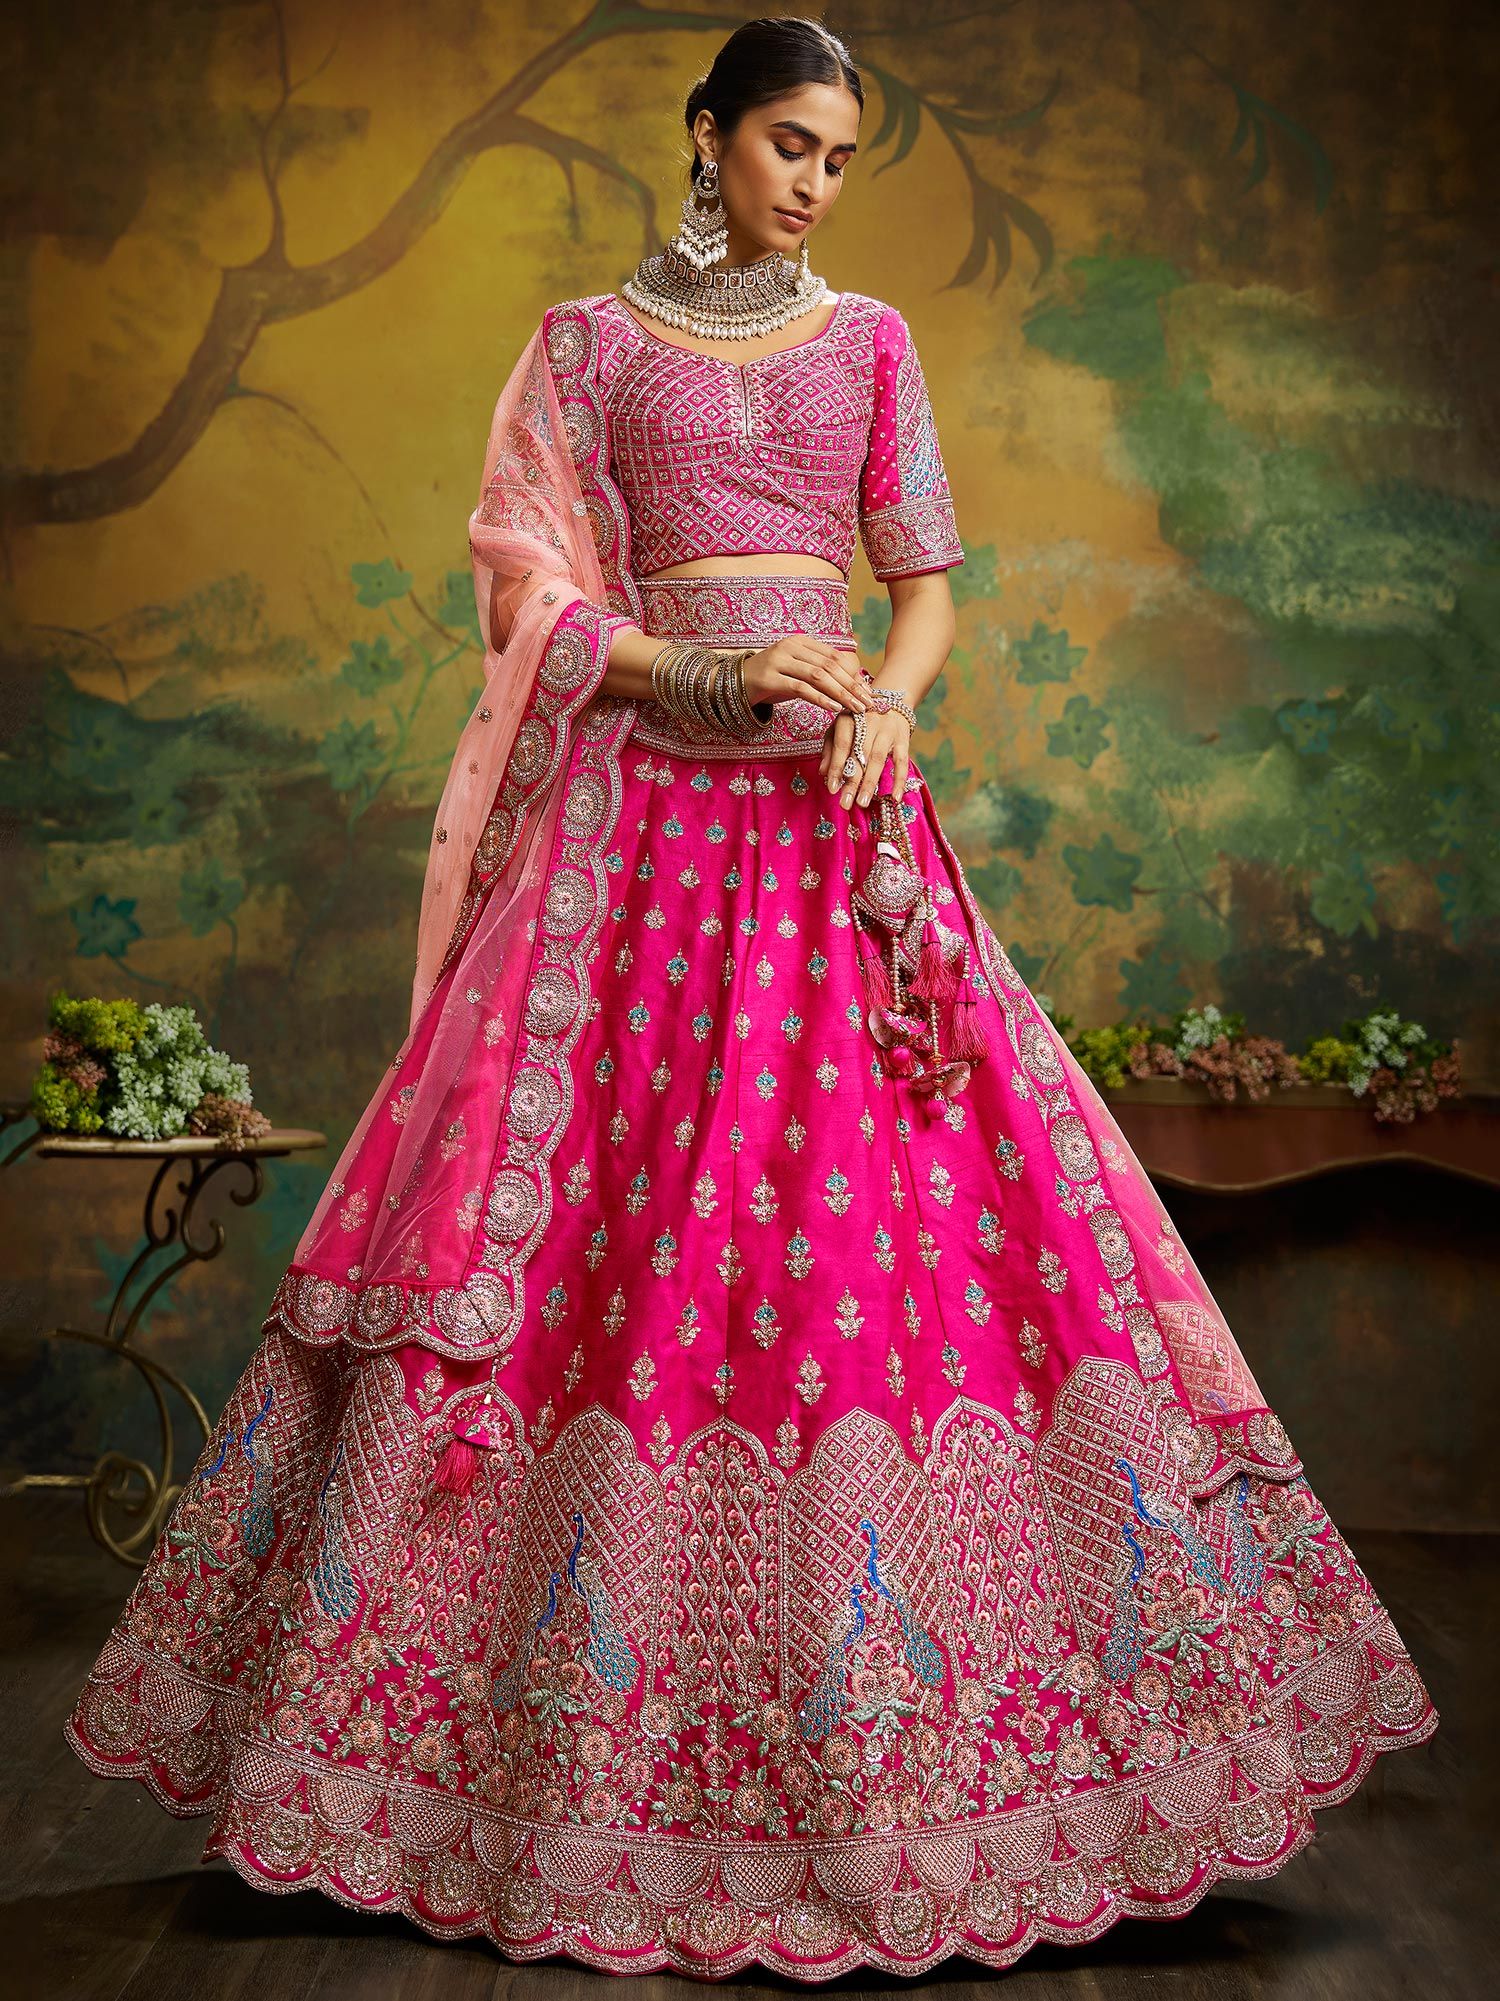 Sensational & Glamorous Diamond Studded Coral Lehenga Choli – Saris and  Things